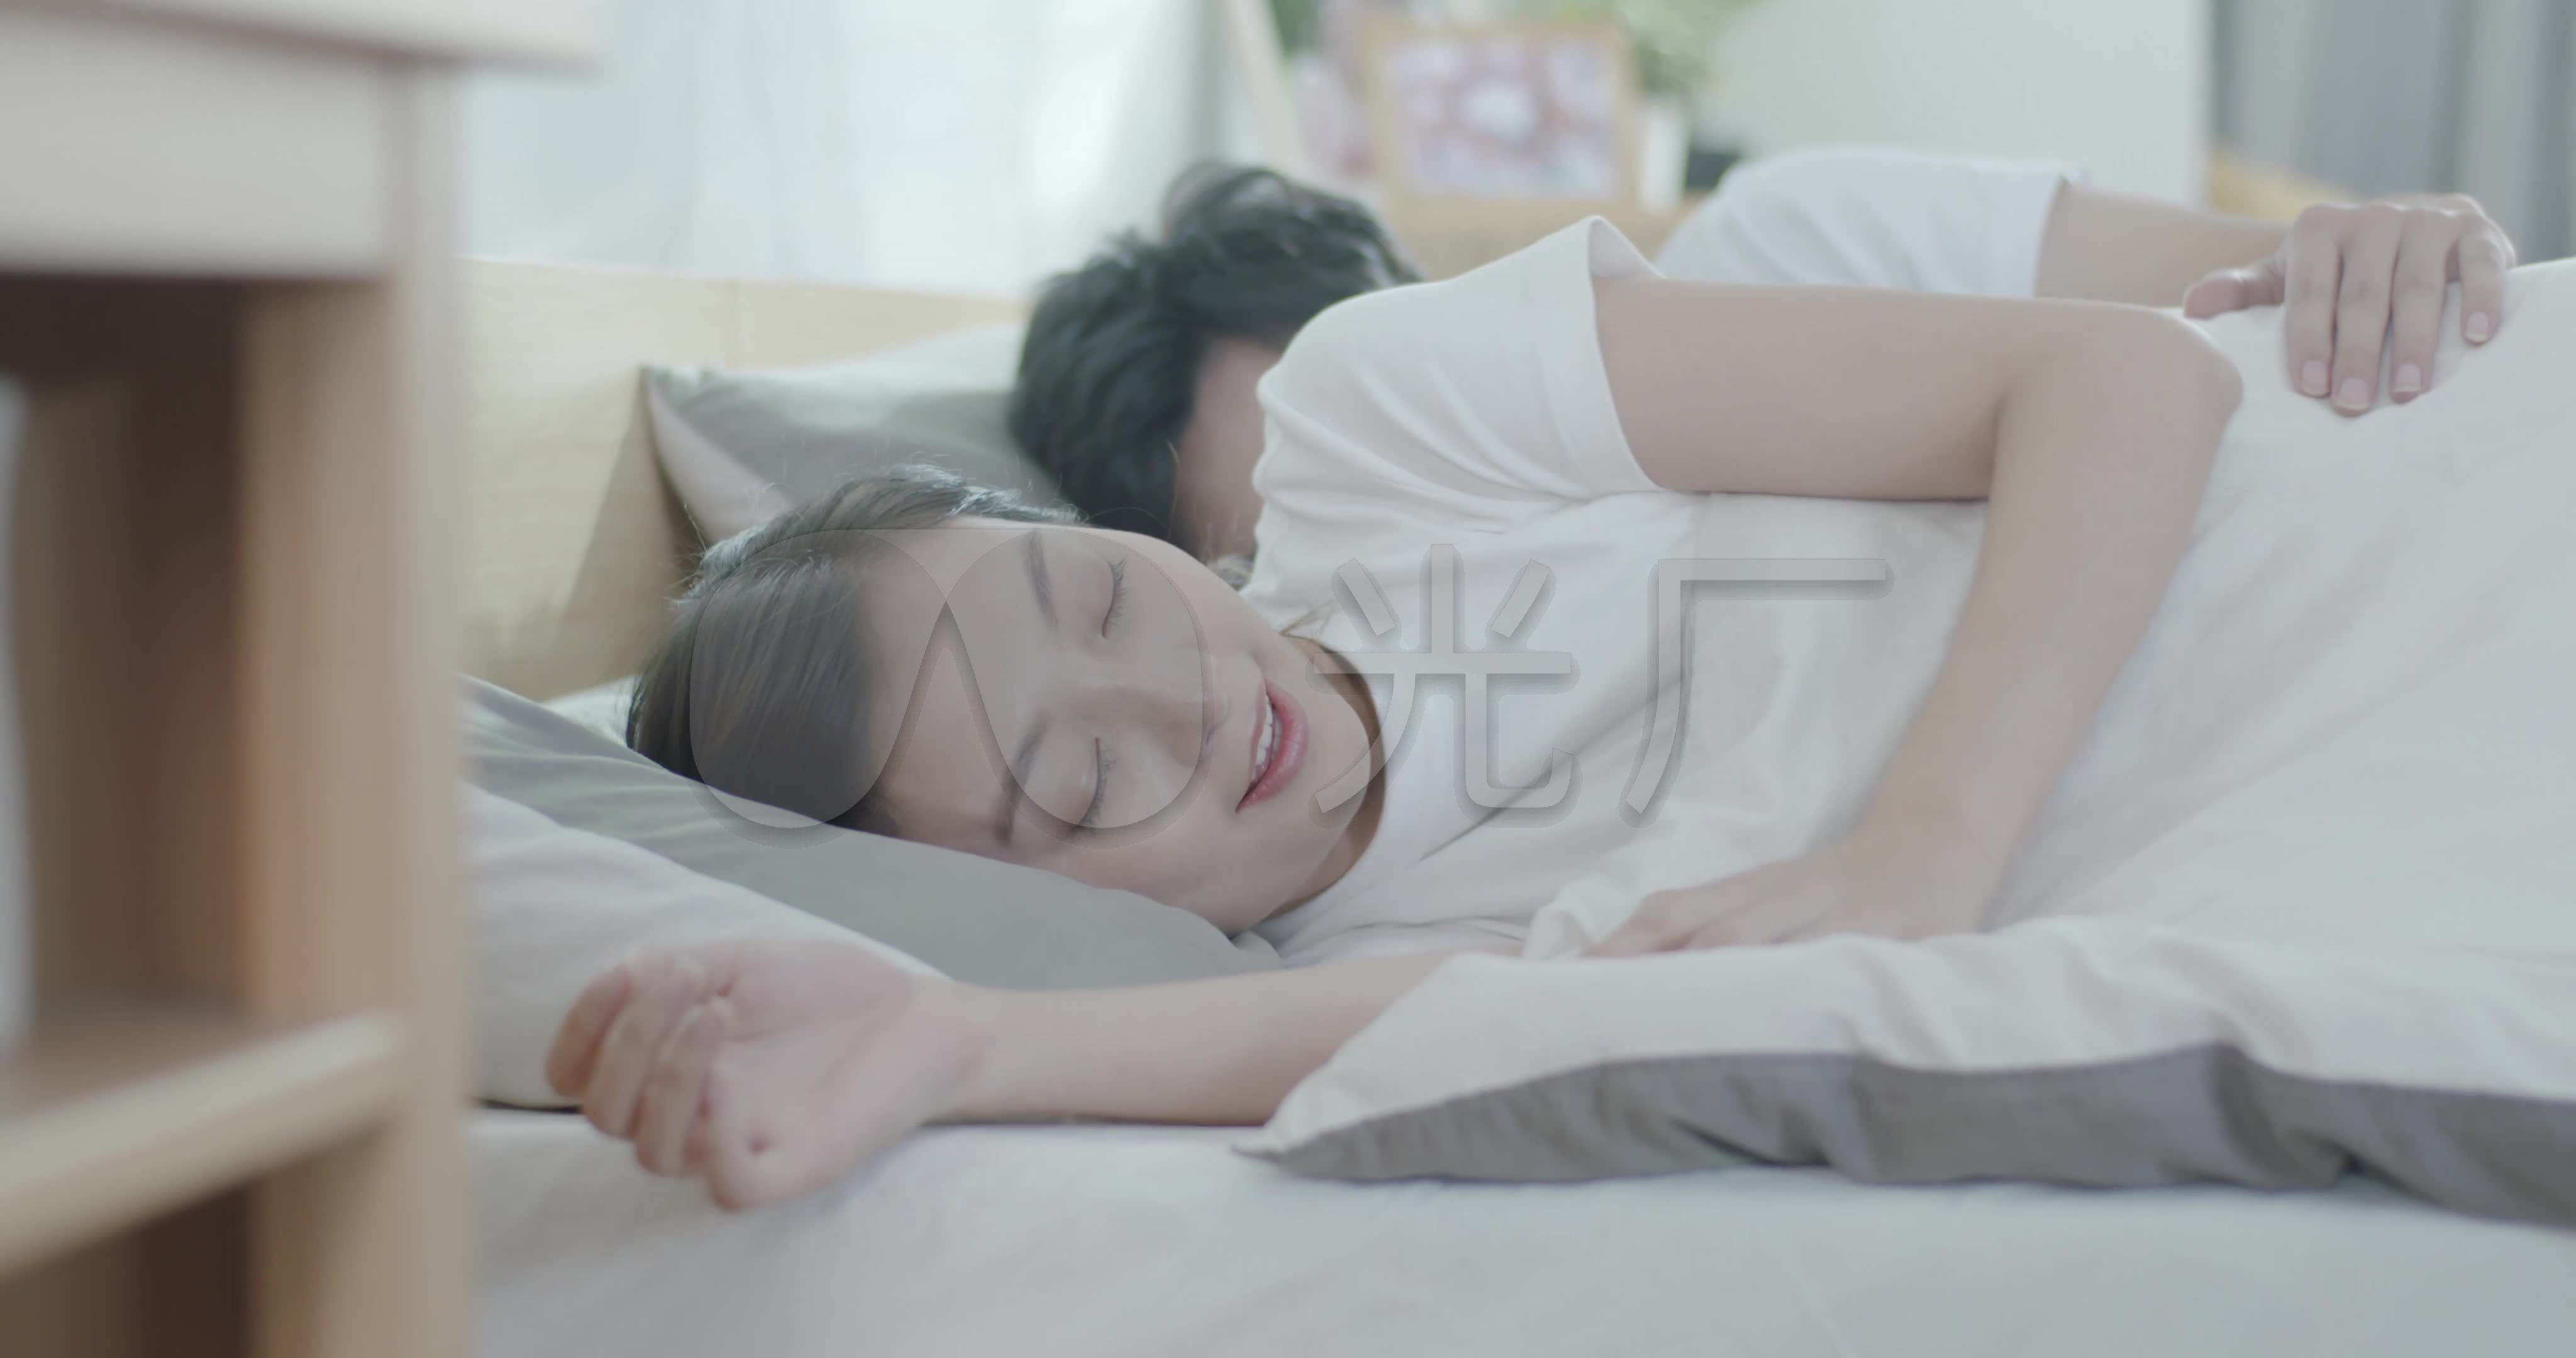 情侶夫妻背對背睡覺圖片素材-JPG圖片尺寸6000 × 4000px-高清圖案500609972-zh.lovepik.com